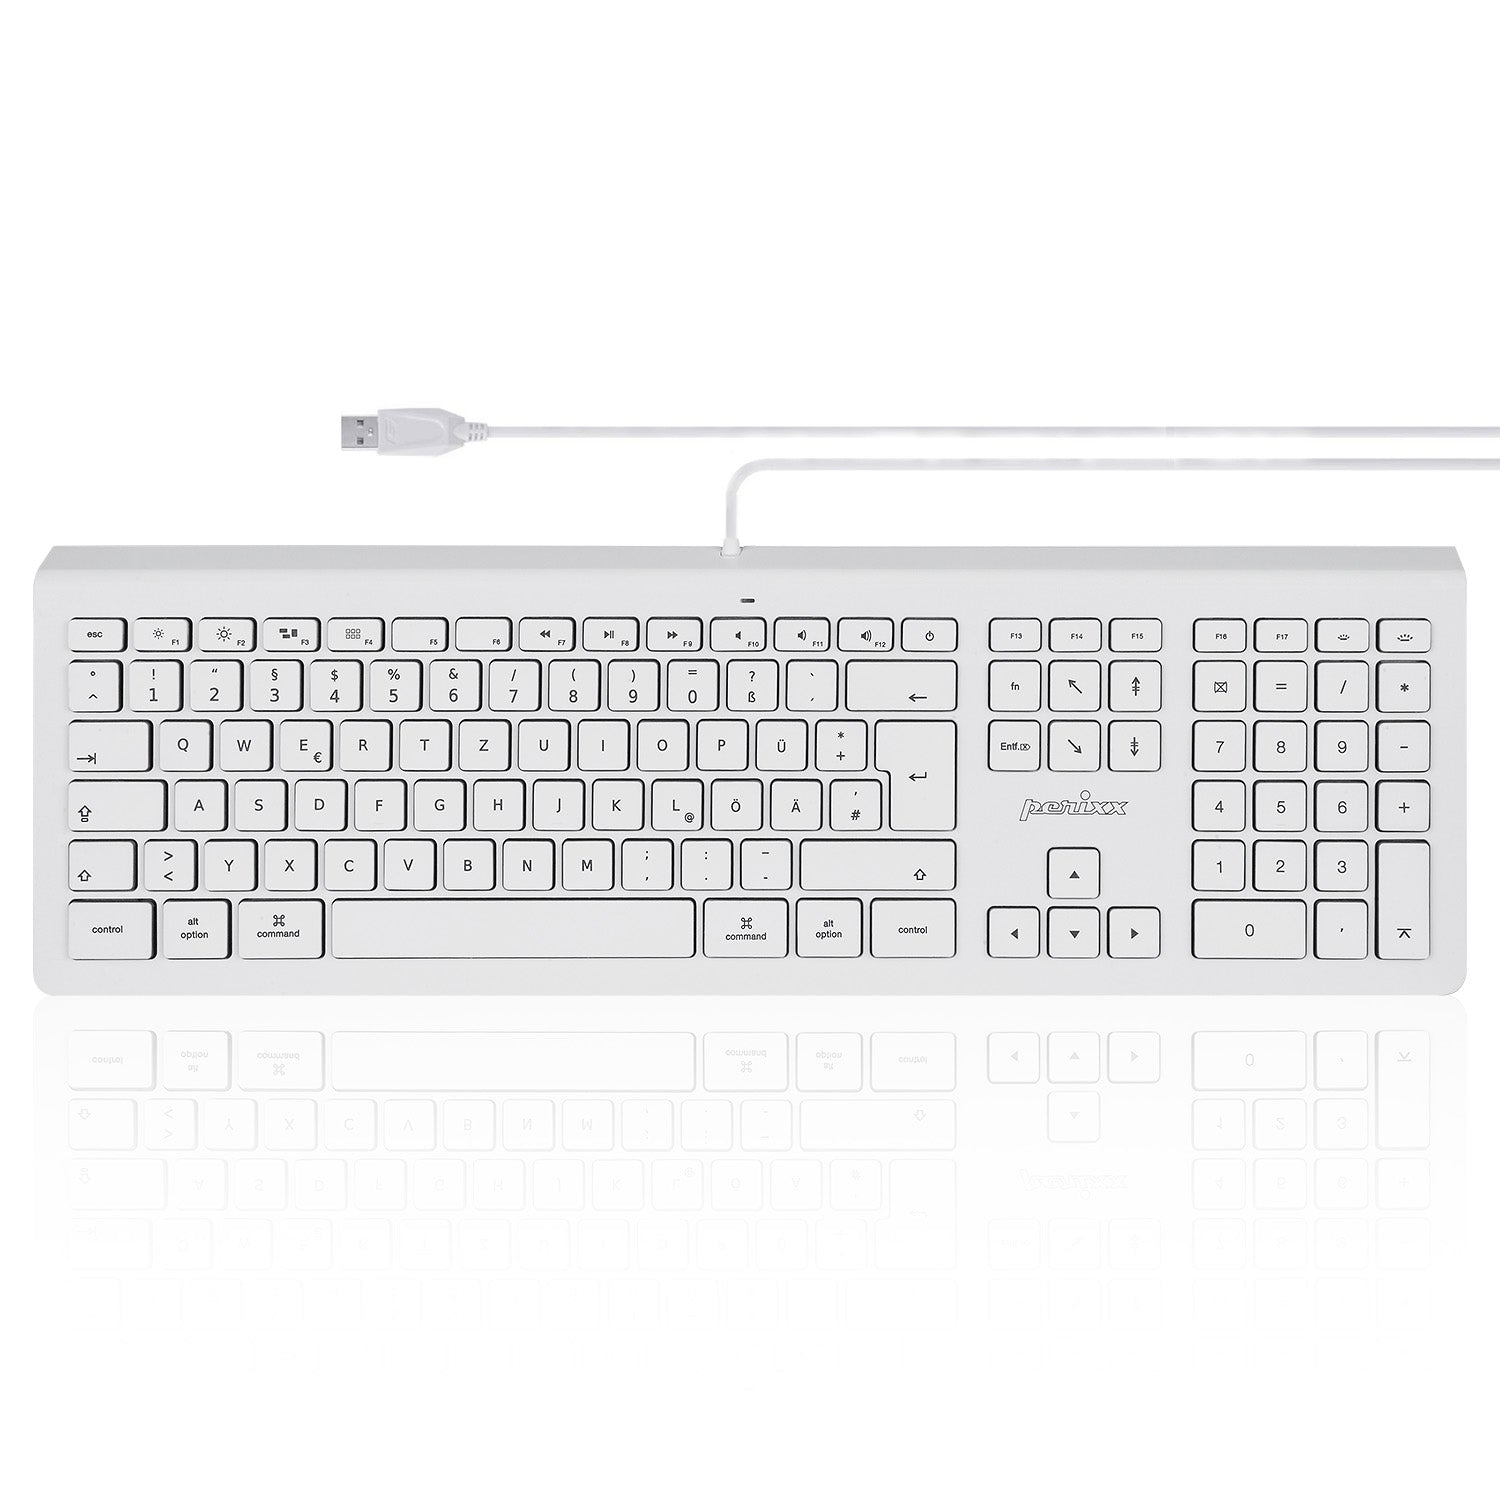 keyboard maestro mac tutorial